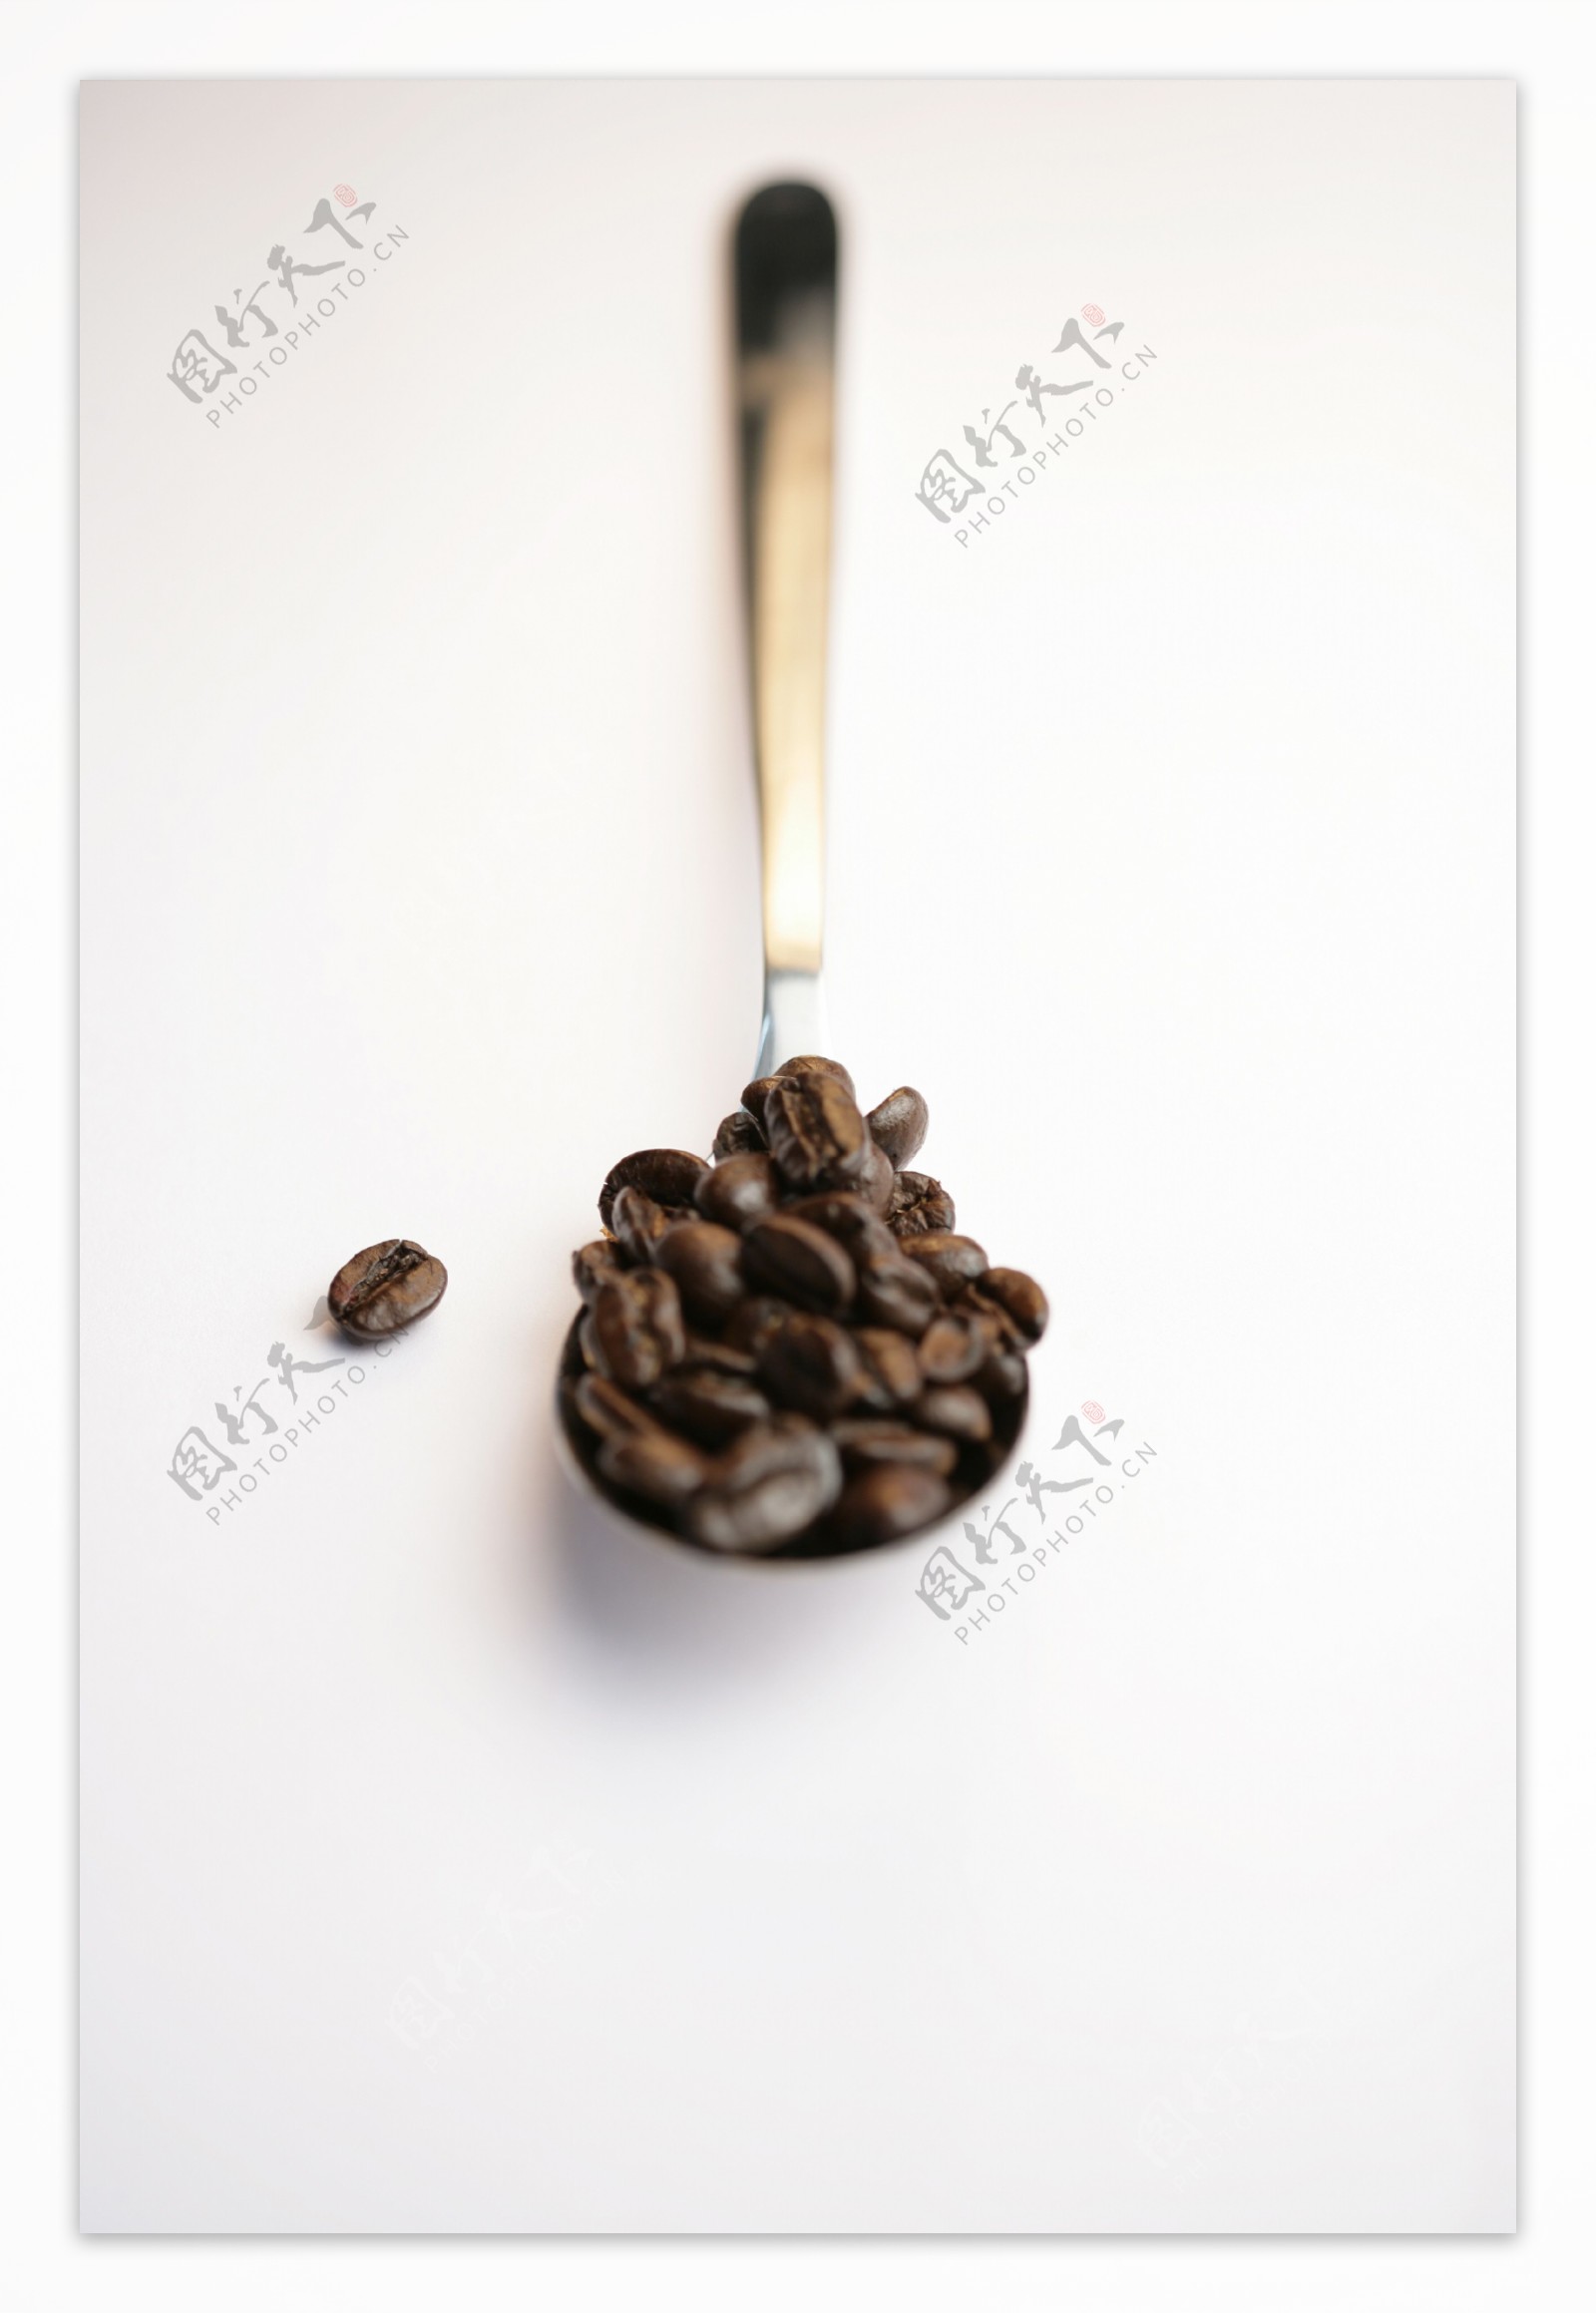 一勺咖啡豆图片